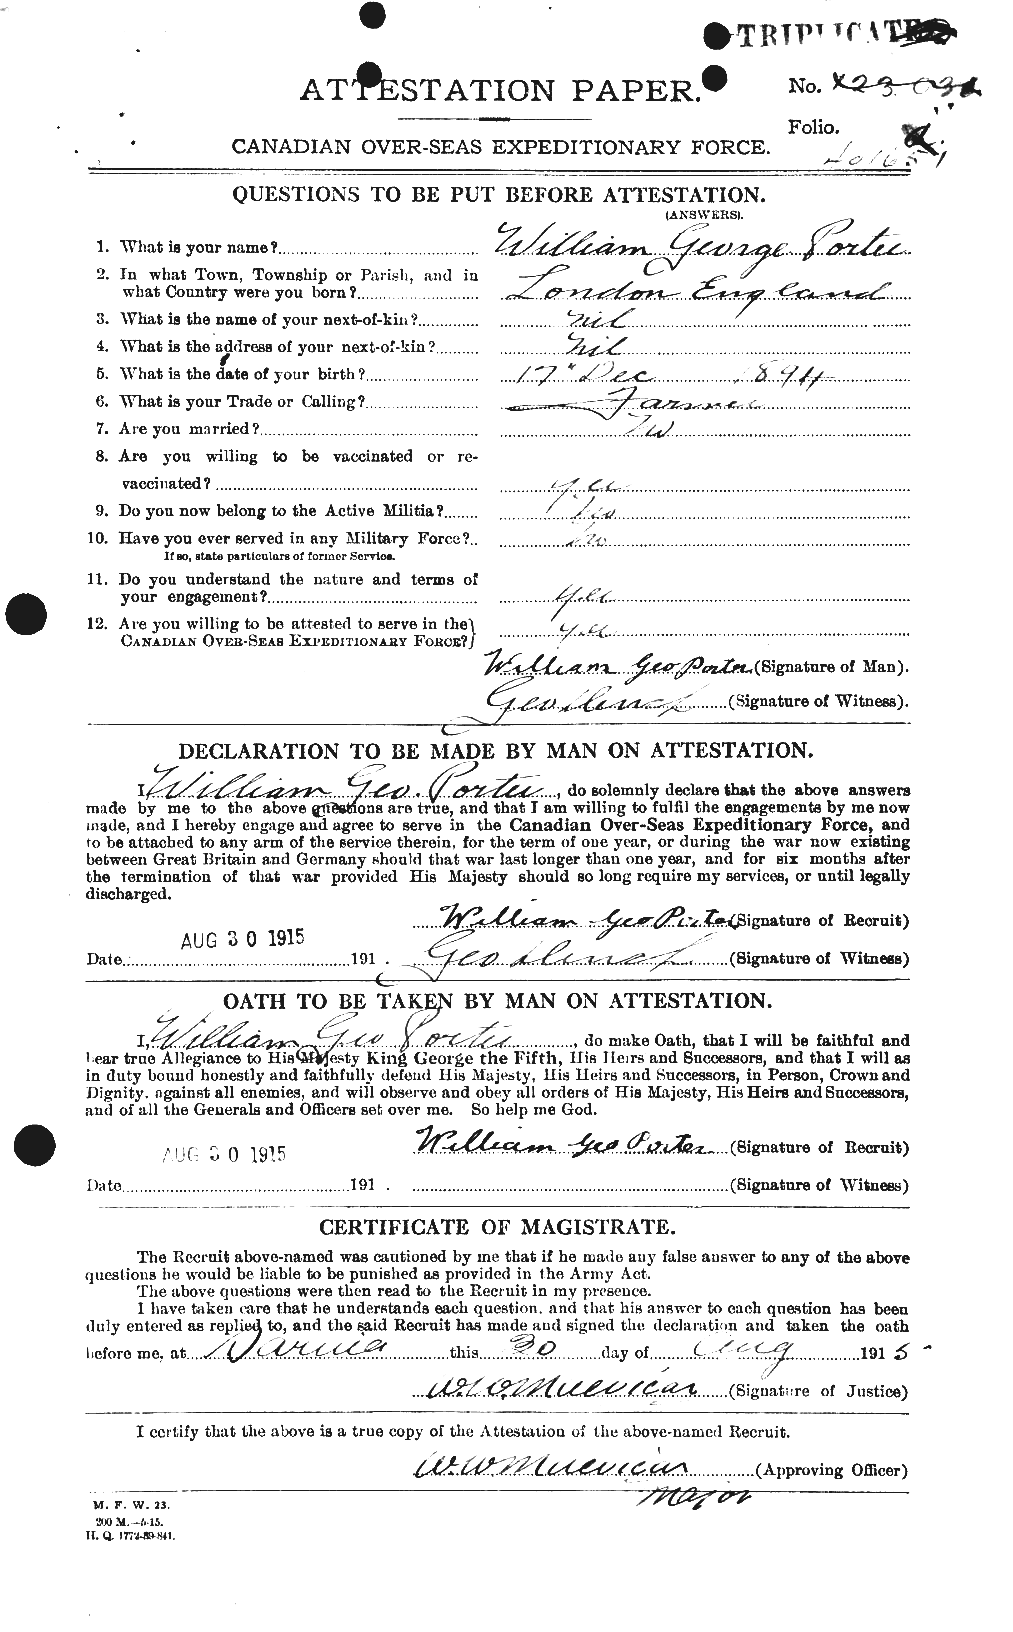 Dossiers du Personnel de la Première Guerre mondiale - CEC 583891a